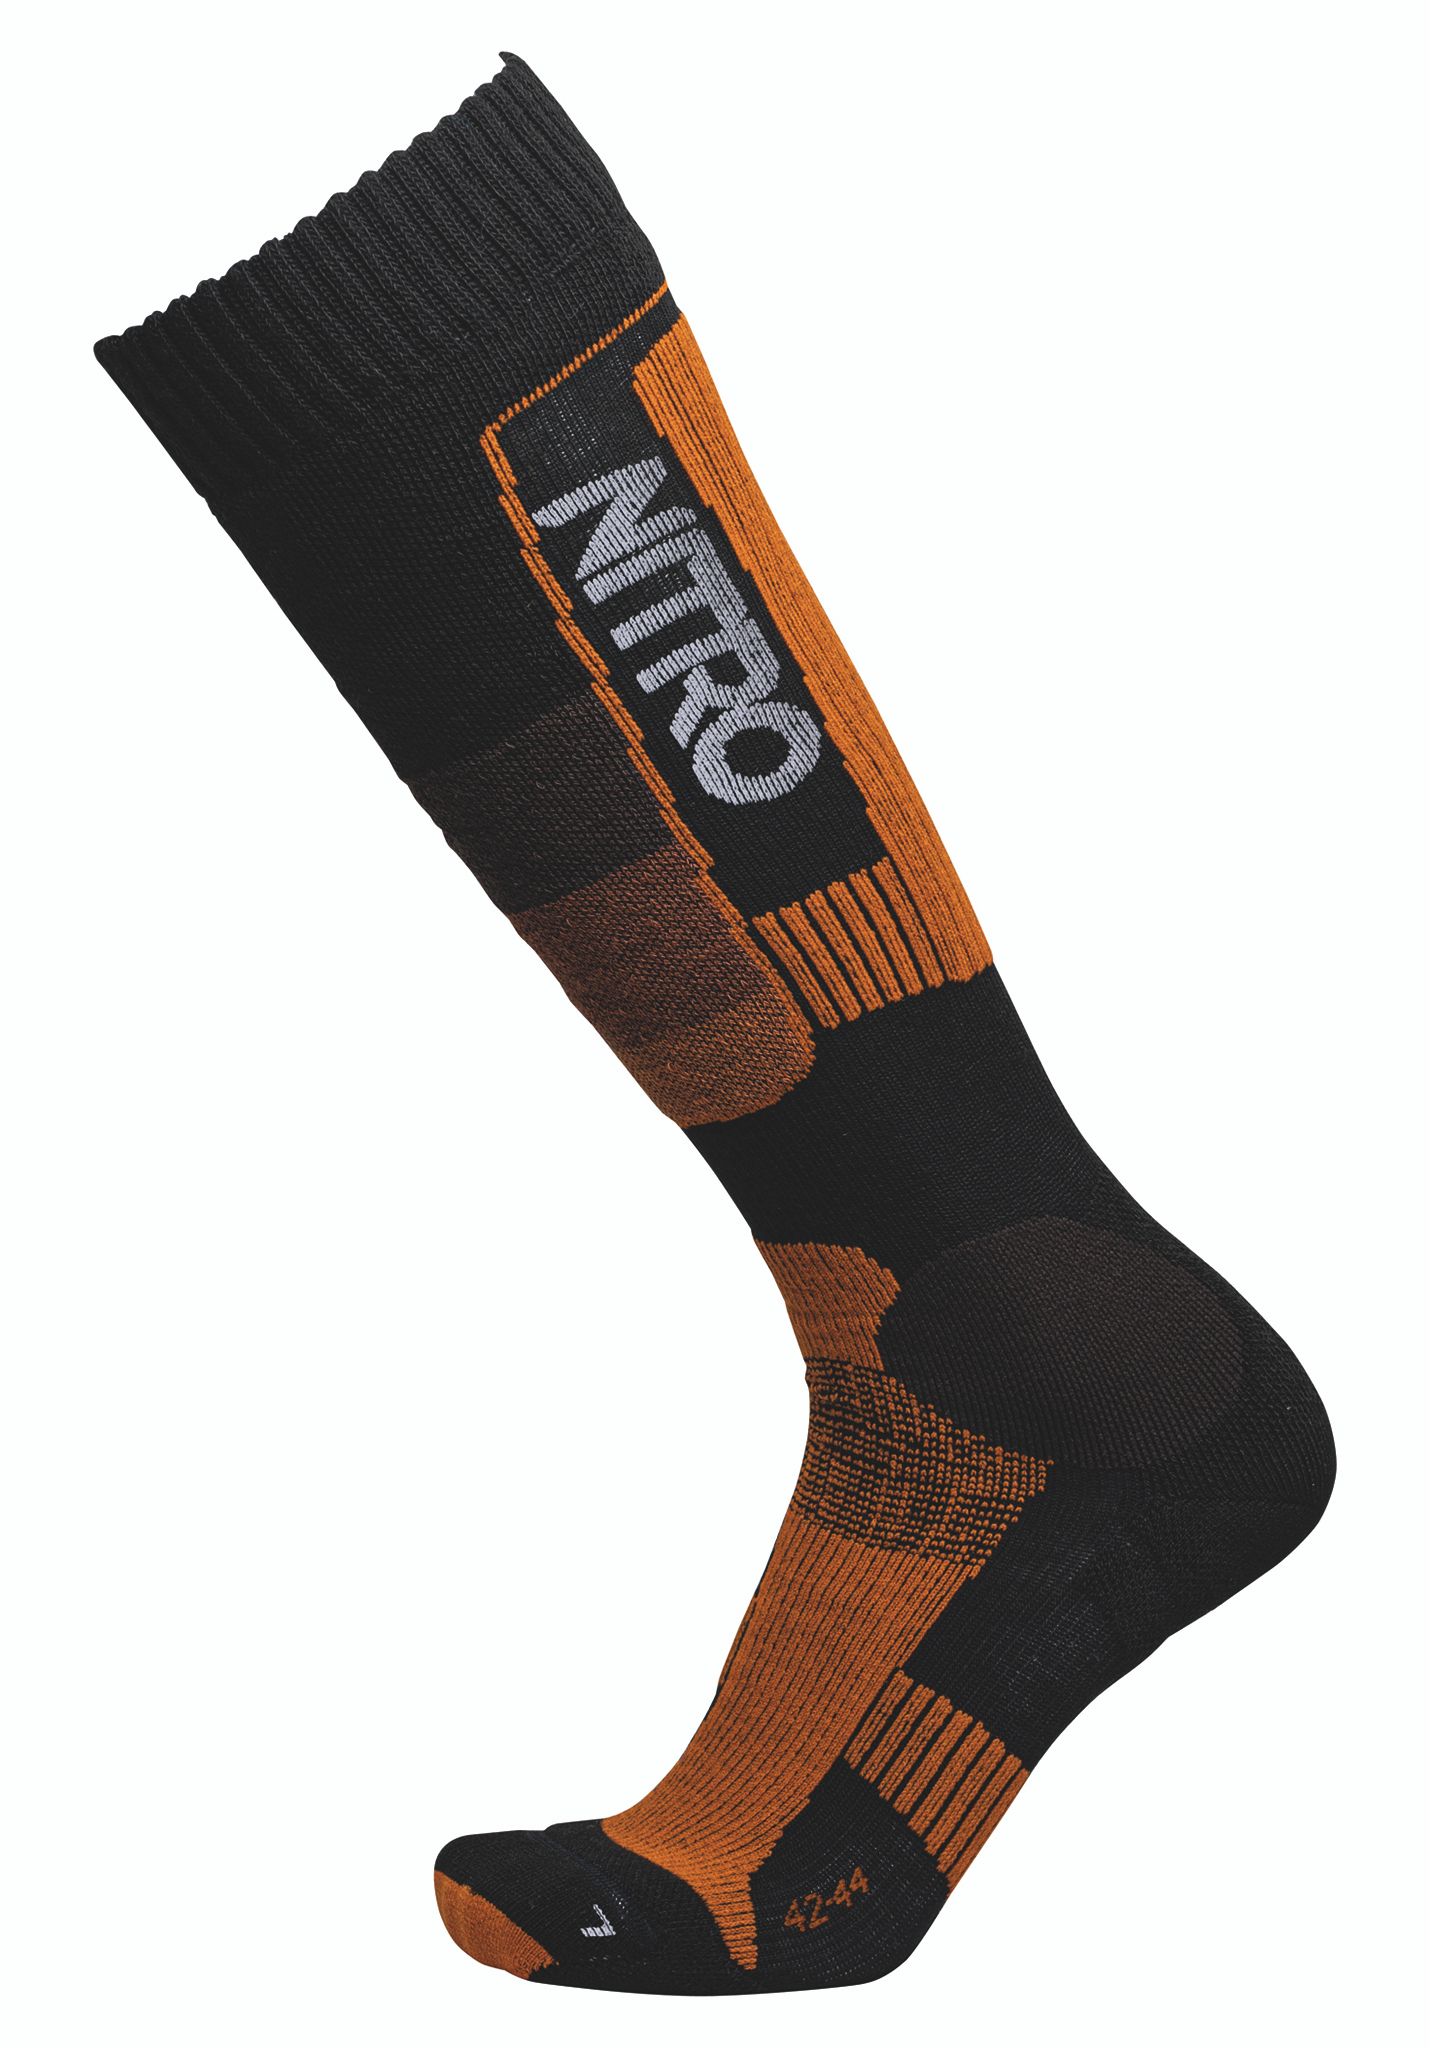 Nitro Cloud 8 Socken schwarz-orange L